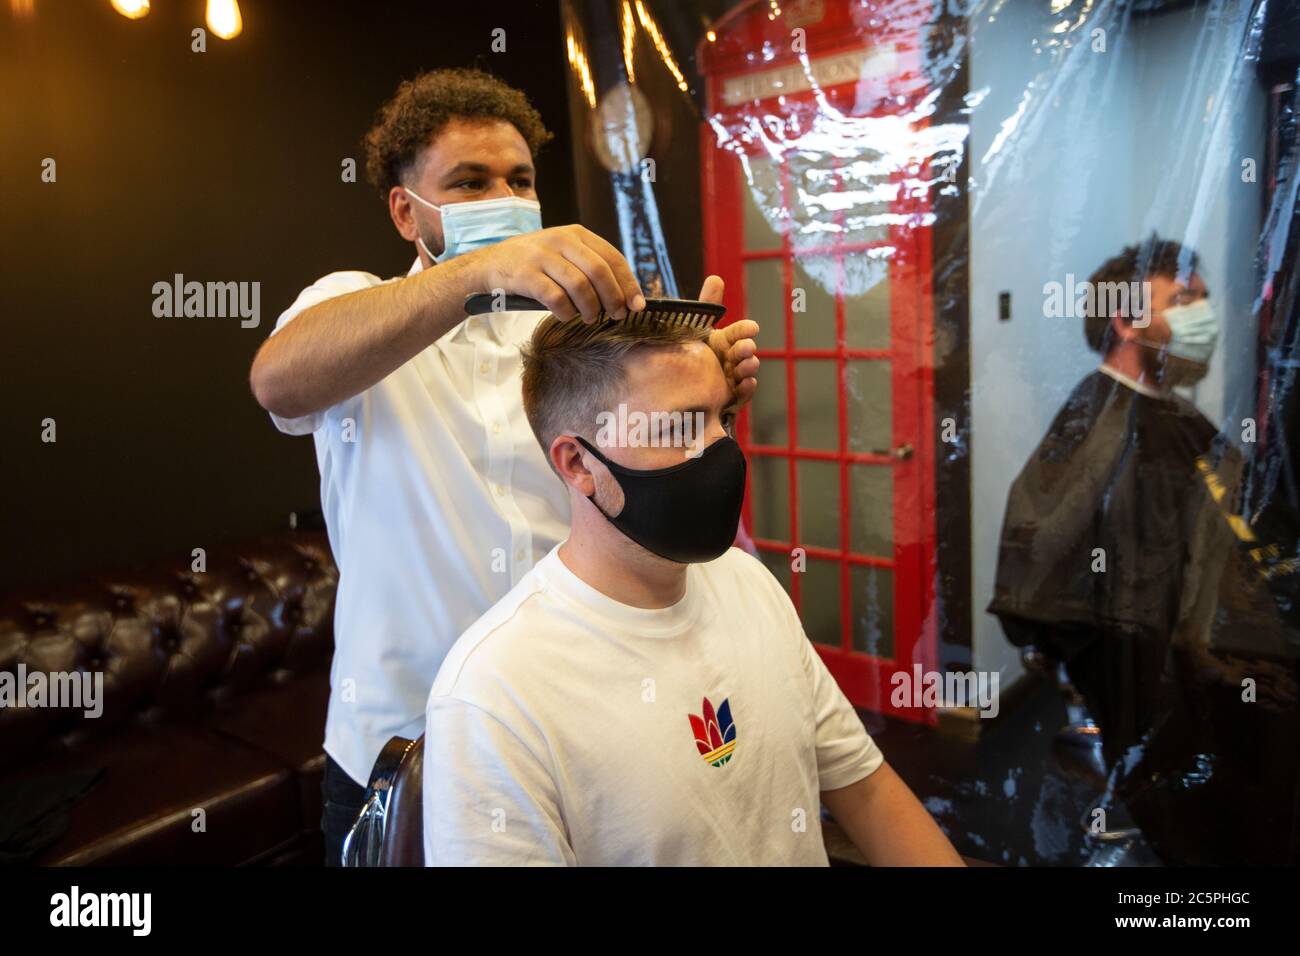 Le salon de coiffure Gentleman a rouvert avec une couverture plastique de précaution et le styliste portant des masques après les restrictions de verrouillage du coronavirus. Banque D'Images